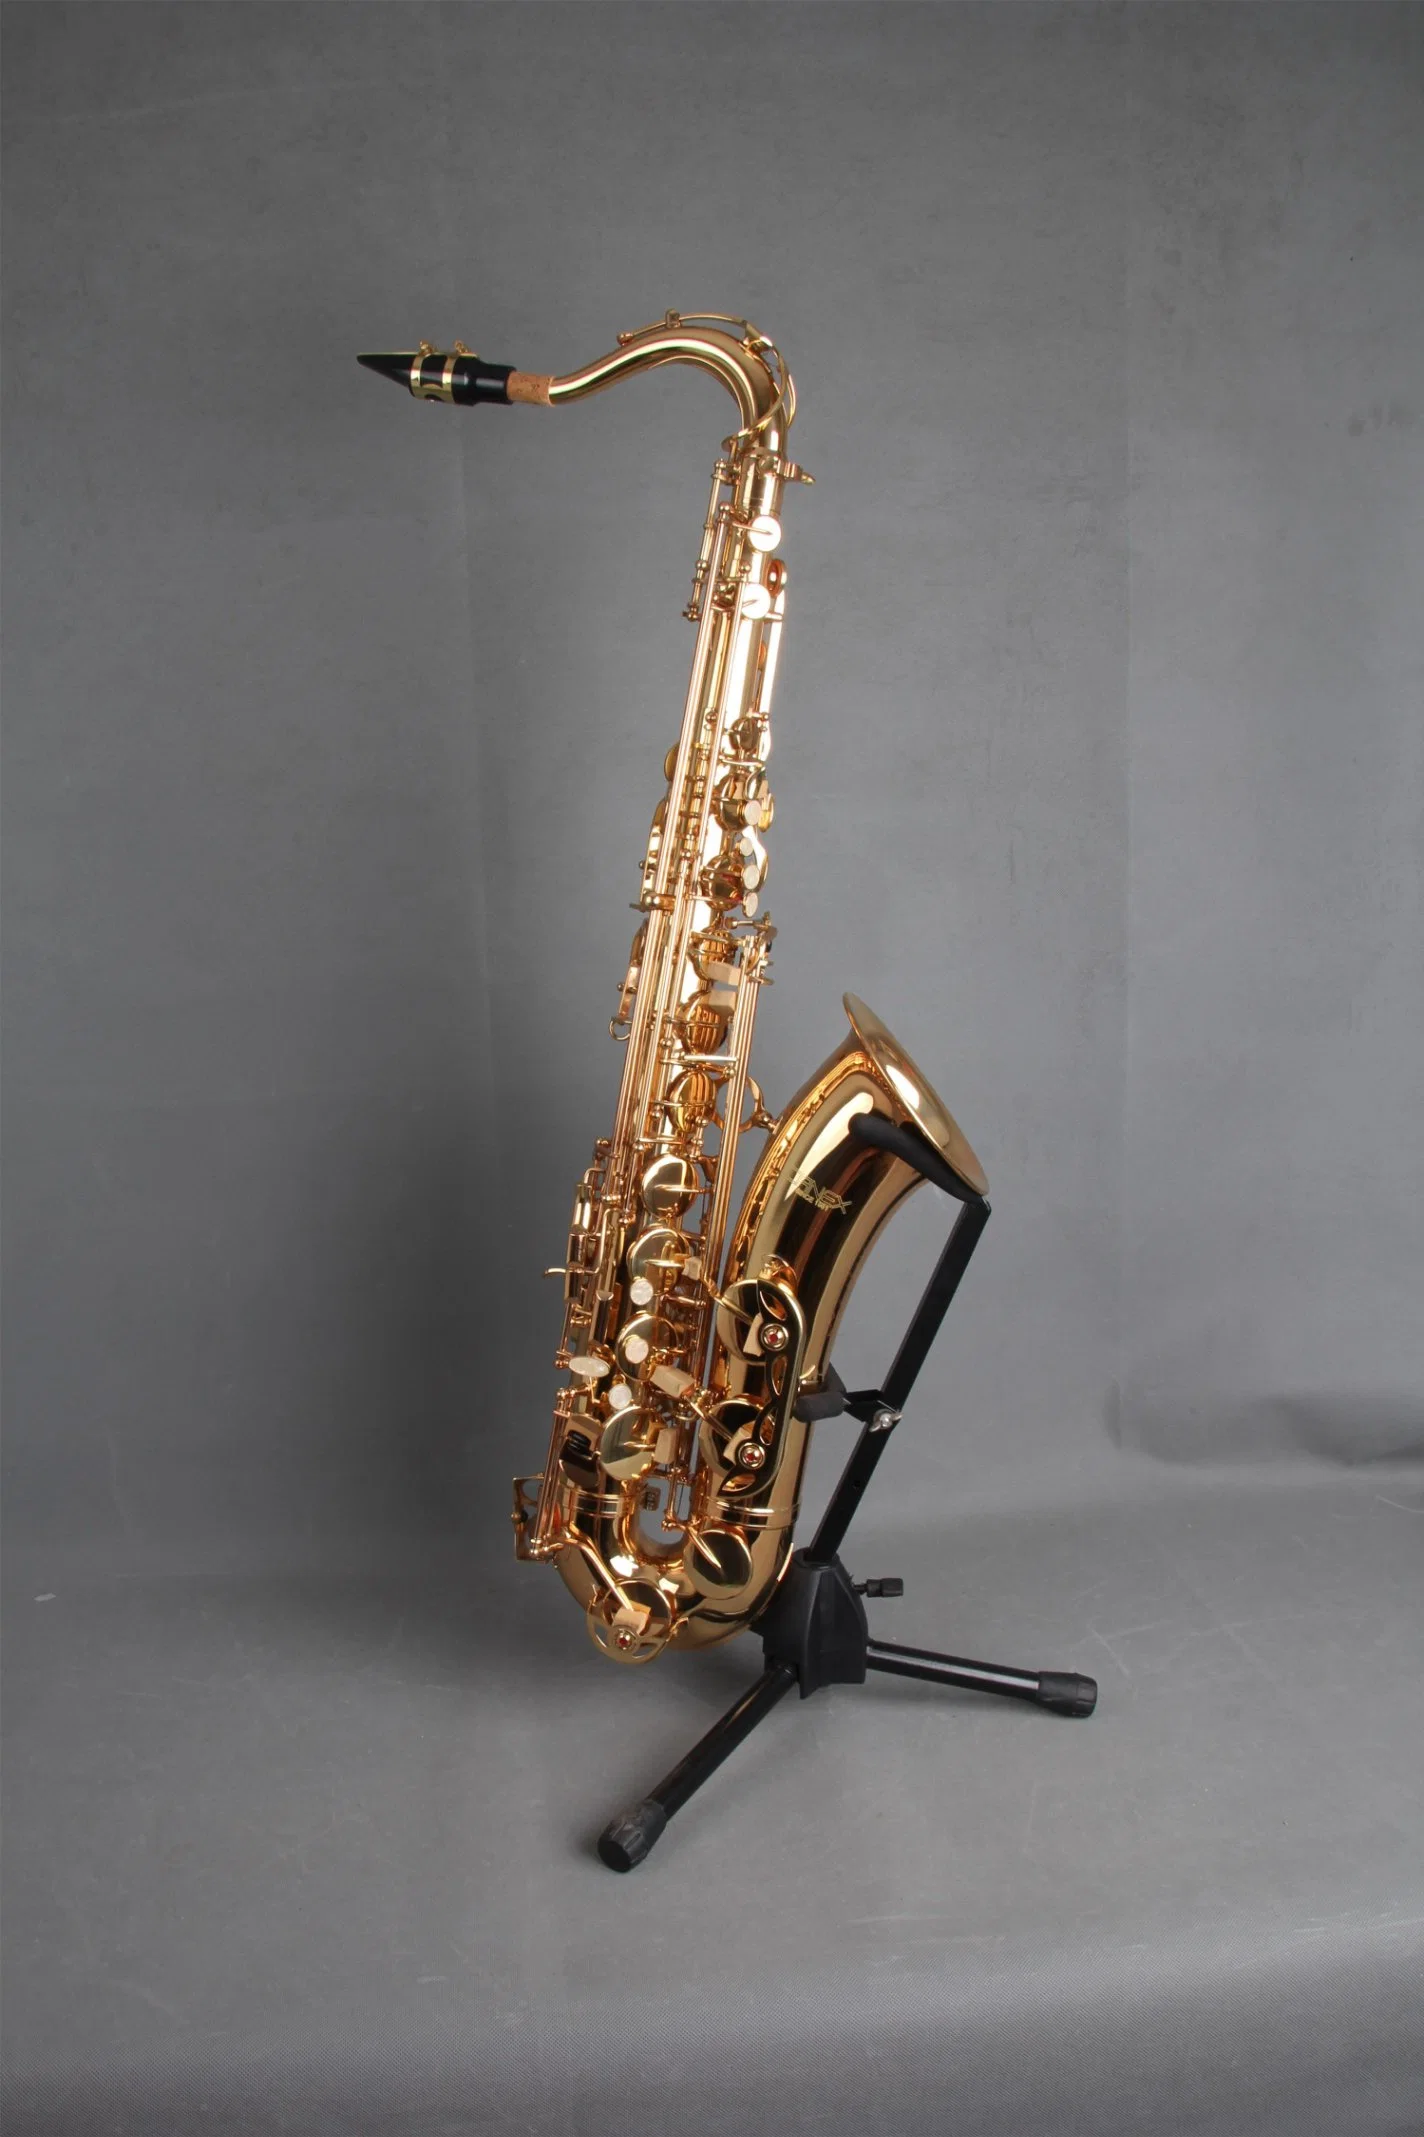 Tenor Saxophone (Canex SAT-L) /Saxophone/Saxophone Gold Lacquer